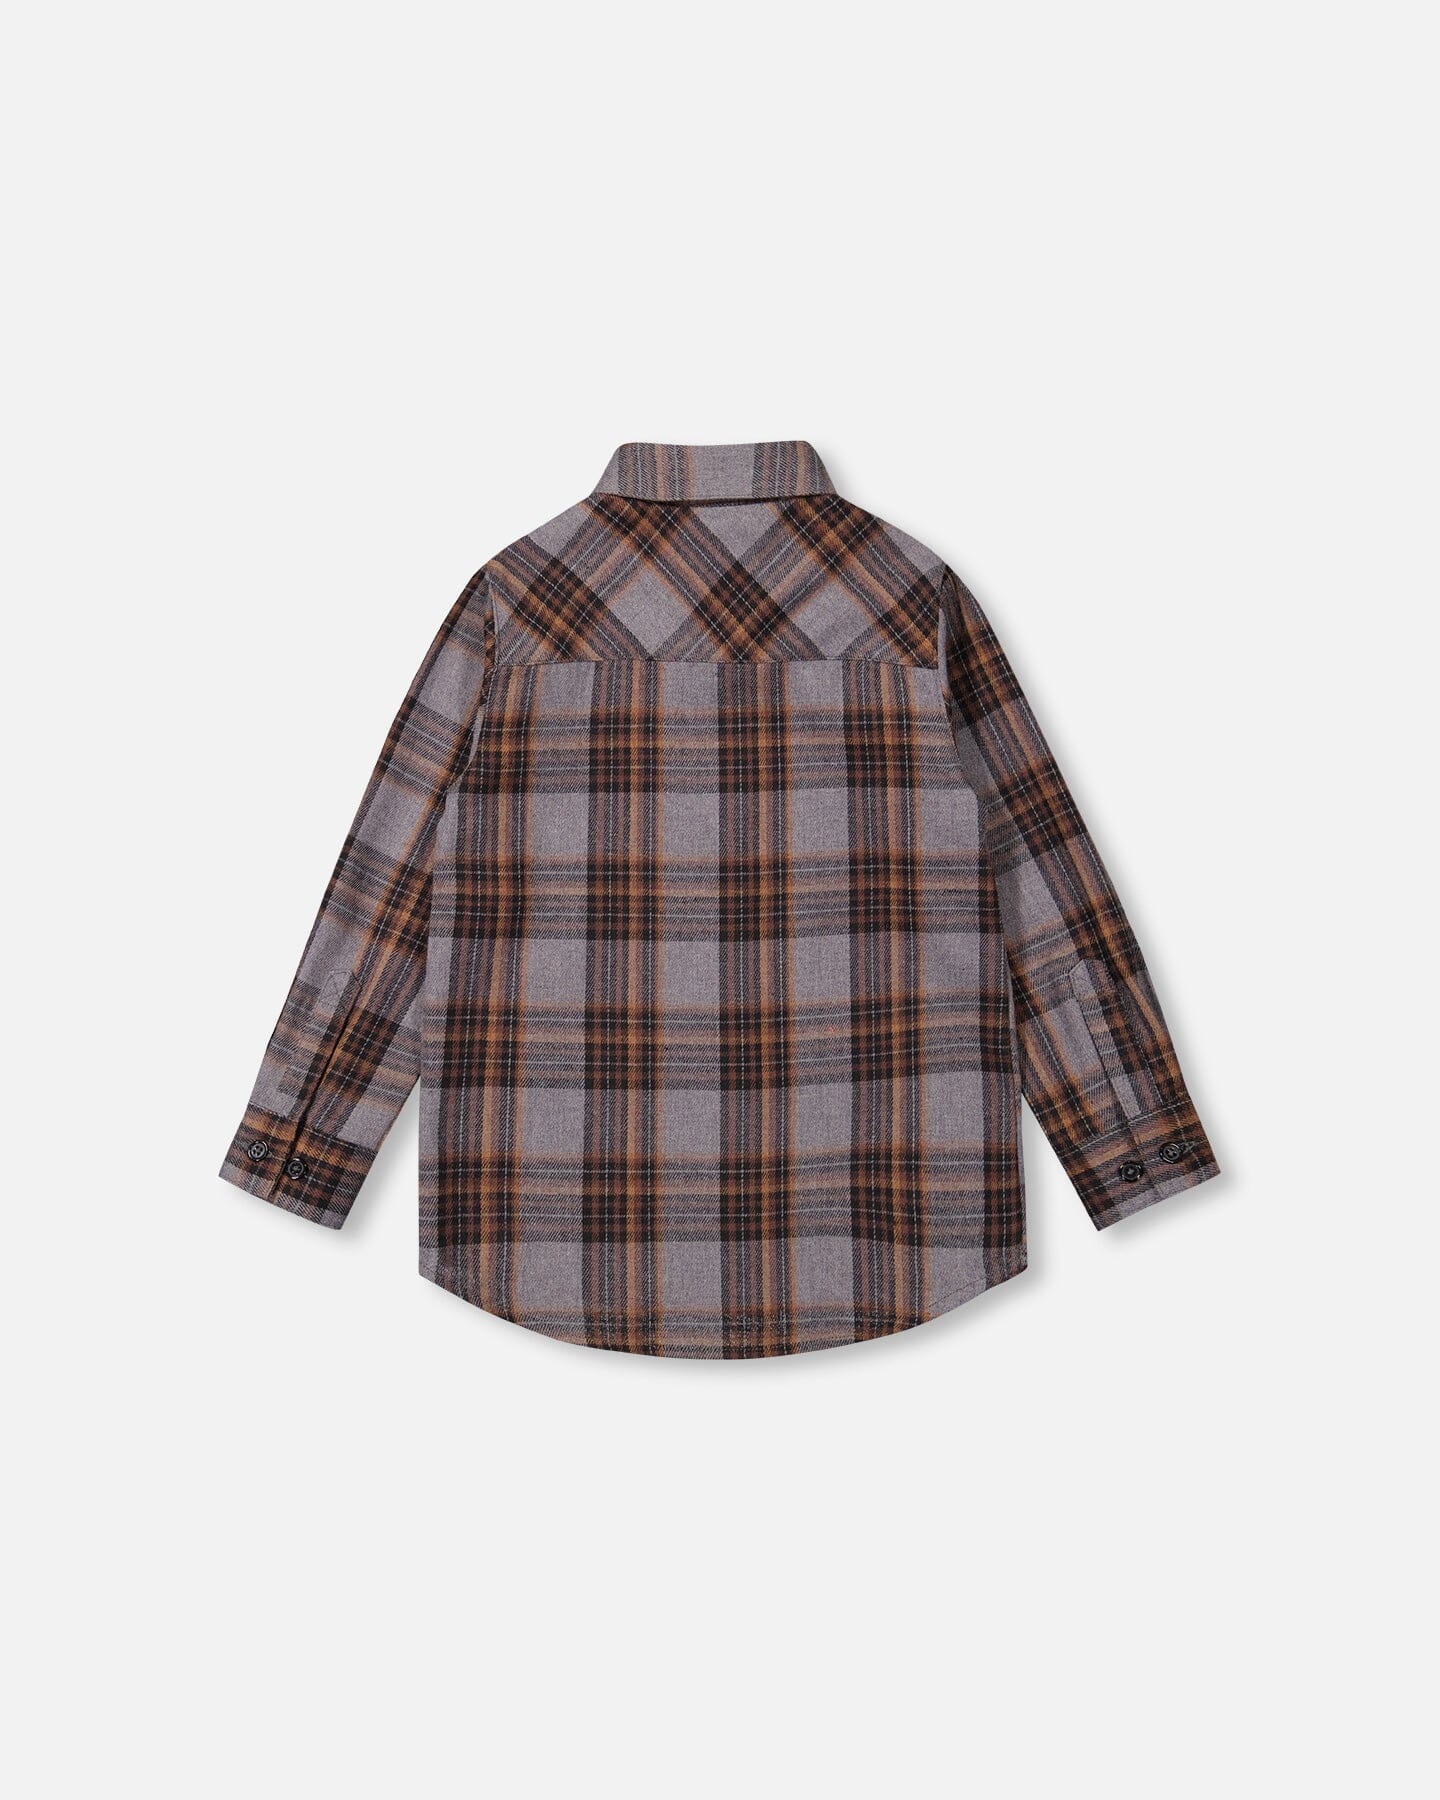 Flannel Shirt Grey And Caramel Plaid - F20U10_000